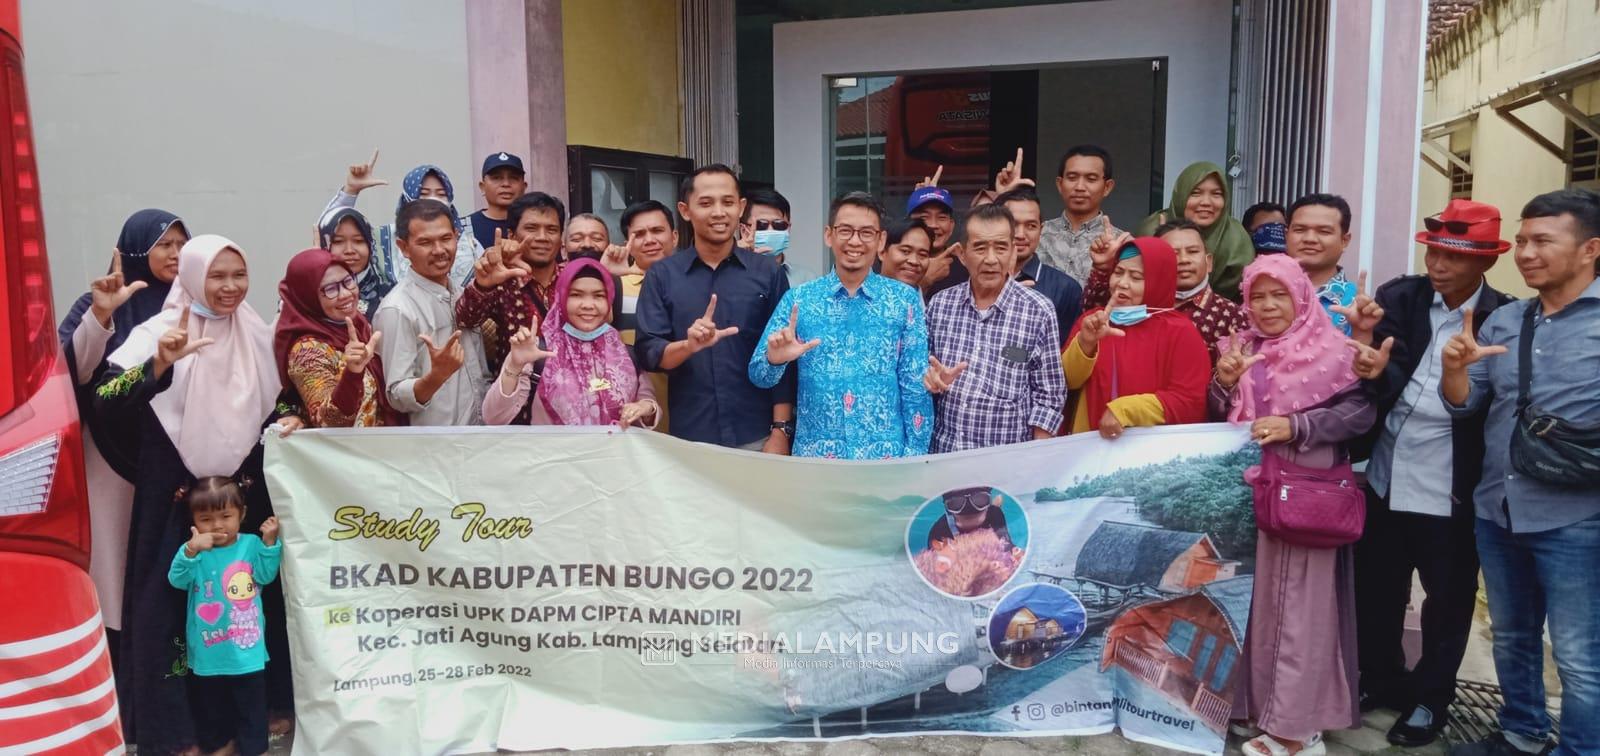 BKAD Kabupaten Bungo Kunjungi UPK DAPM Cipta Mandiri